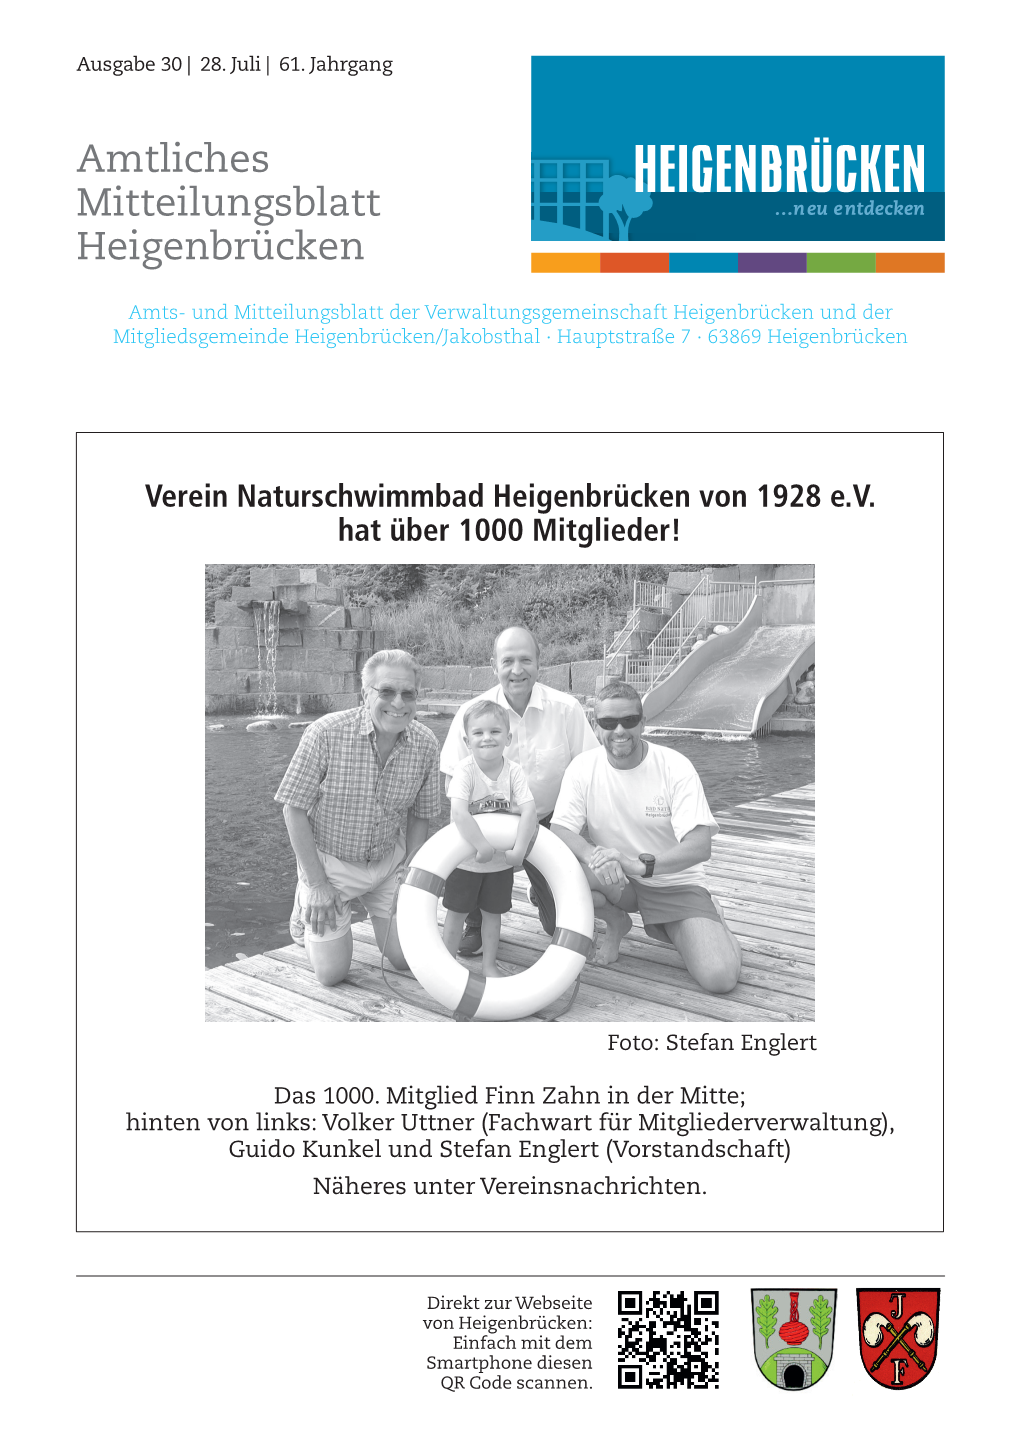 Amtliches Mitteilungsblatt Heigenbrücken